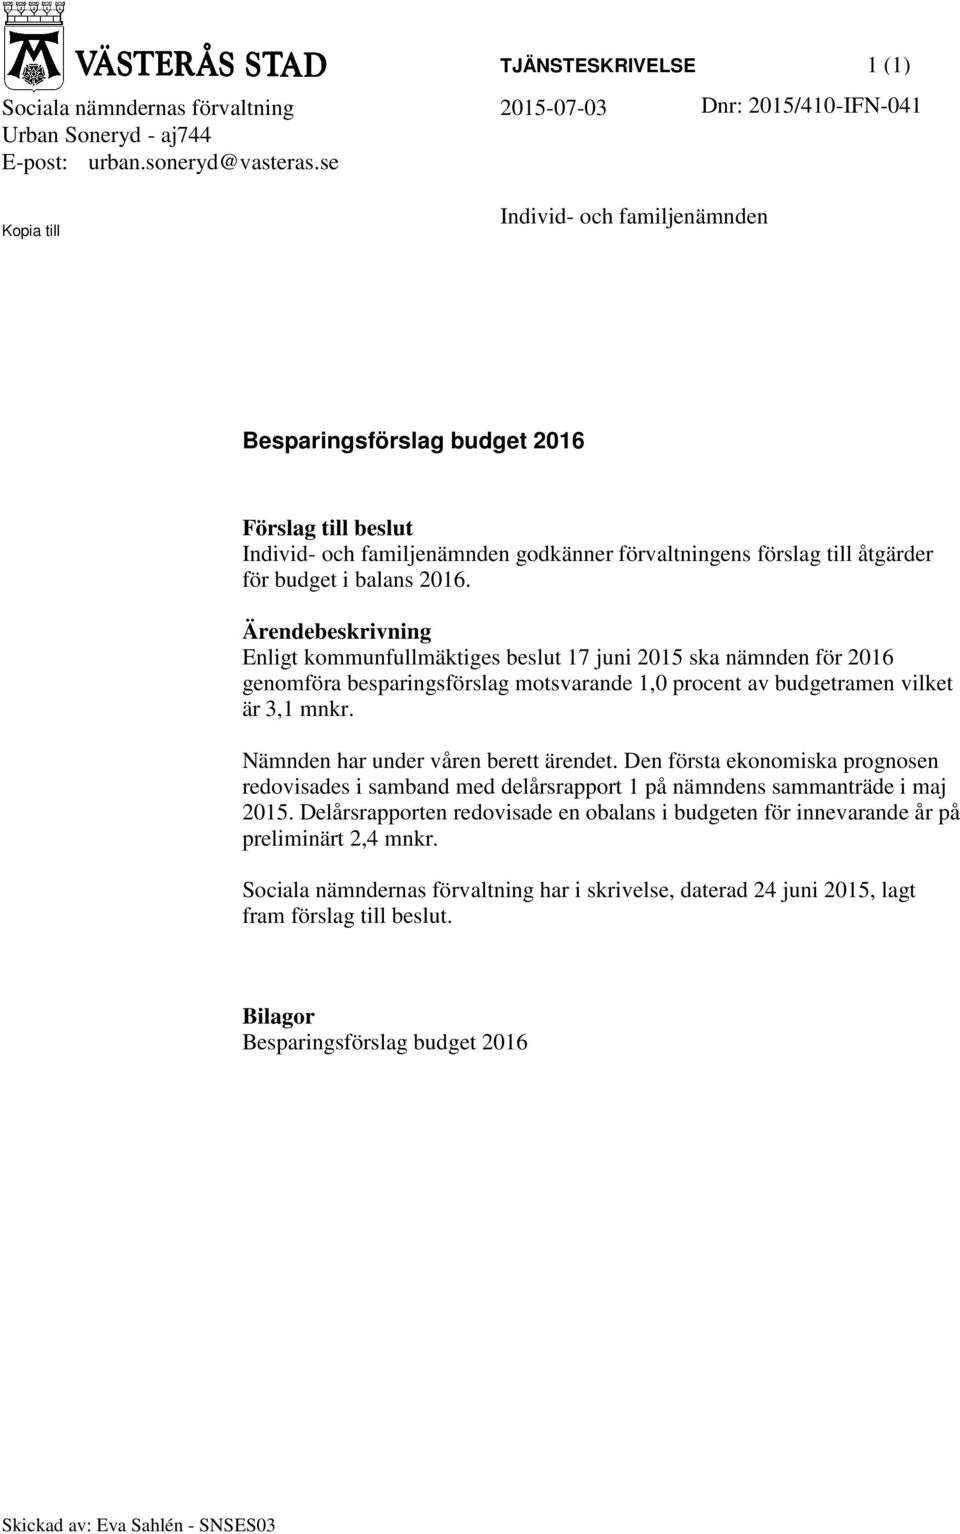 Ärendebeskrivning Enligt kommunfullmäktiges beslut 17 juni 2015 ska nämnden för 2016 genomföra besparingsförslag motsvarande 1,0 procent av budgetramen vilket är 3,1 mnkr.